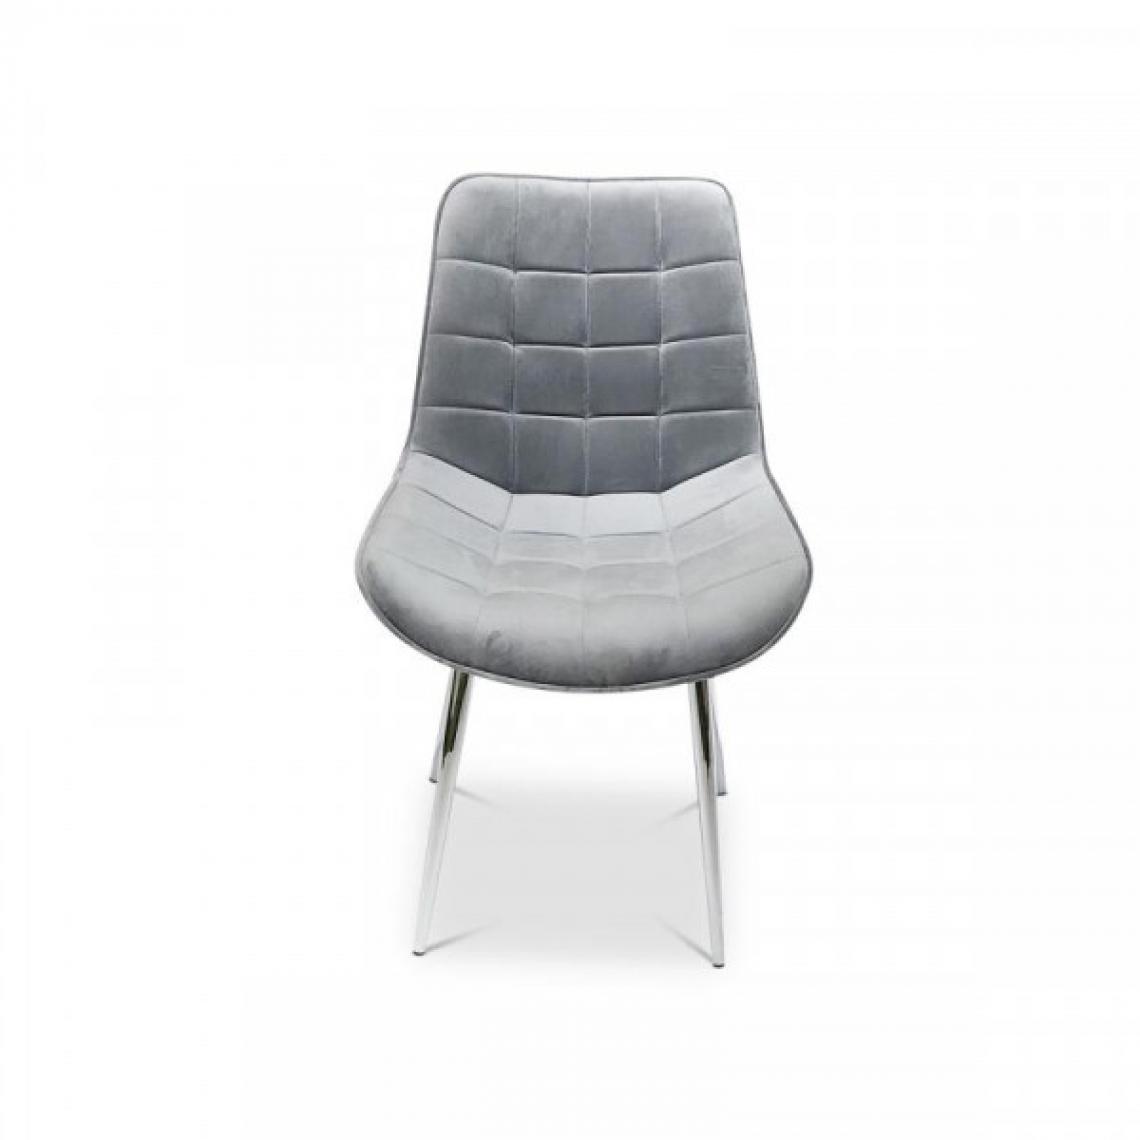 Dansmamaison - Chaise en tissu velours Gris - FATOU - L 53 x l 54 x H 85 cm - Chaises